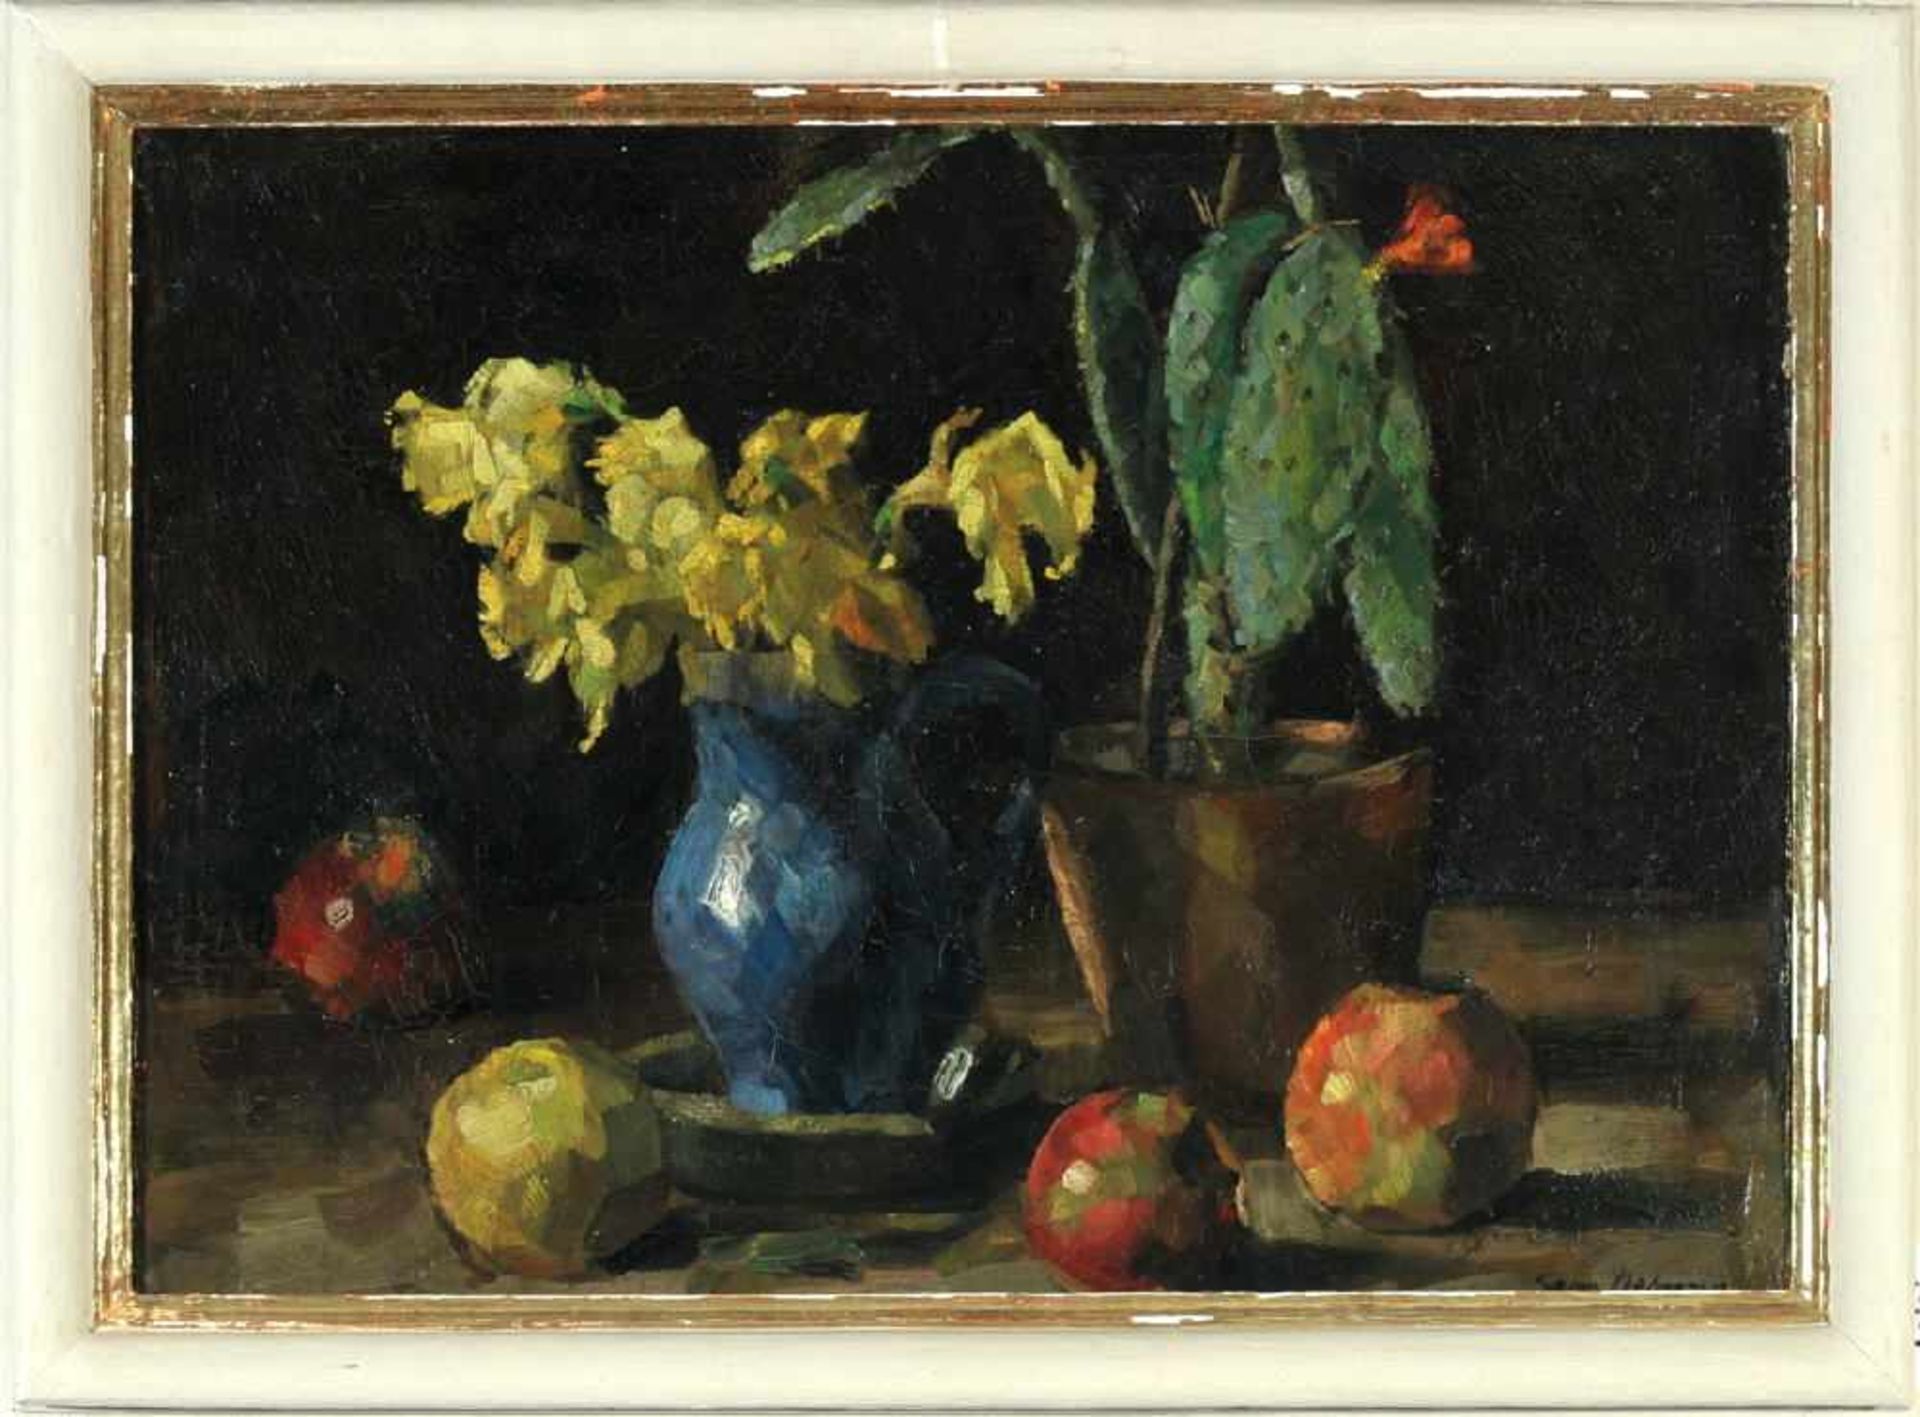 Oehme, Georg Egmont, 1890 Dresden - 1955Öl/Lwd, 41 x 54 cm, " Stillleben mit Narzissen und Äpfeln ",